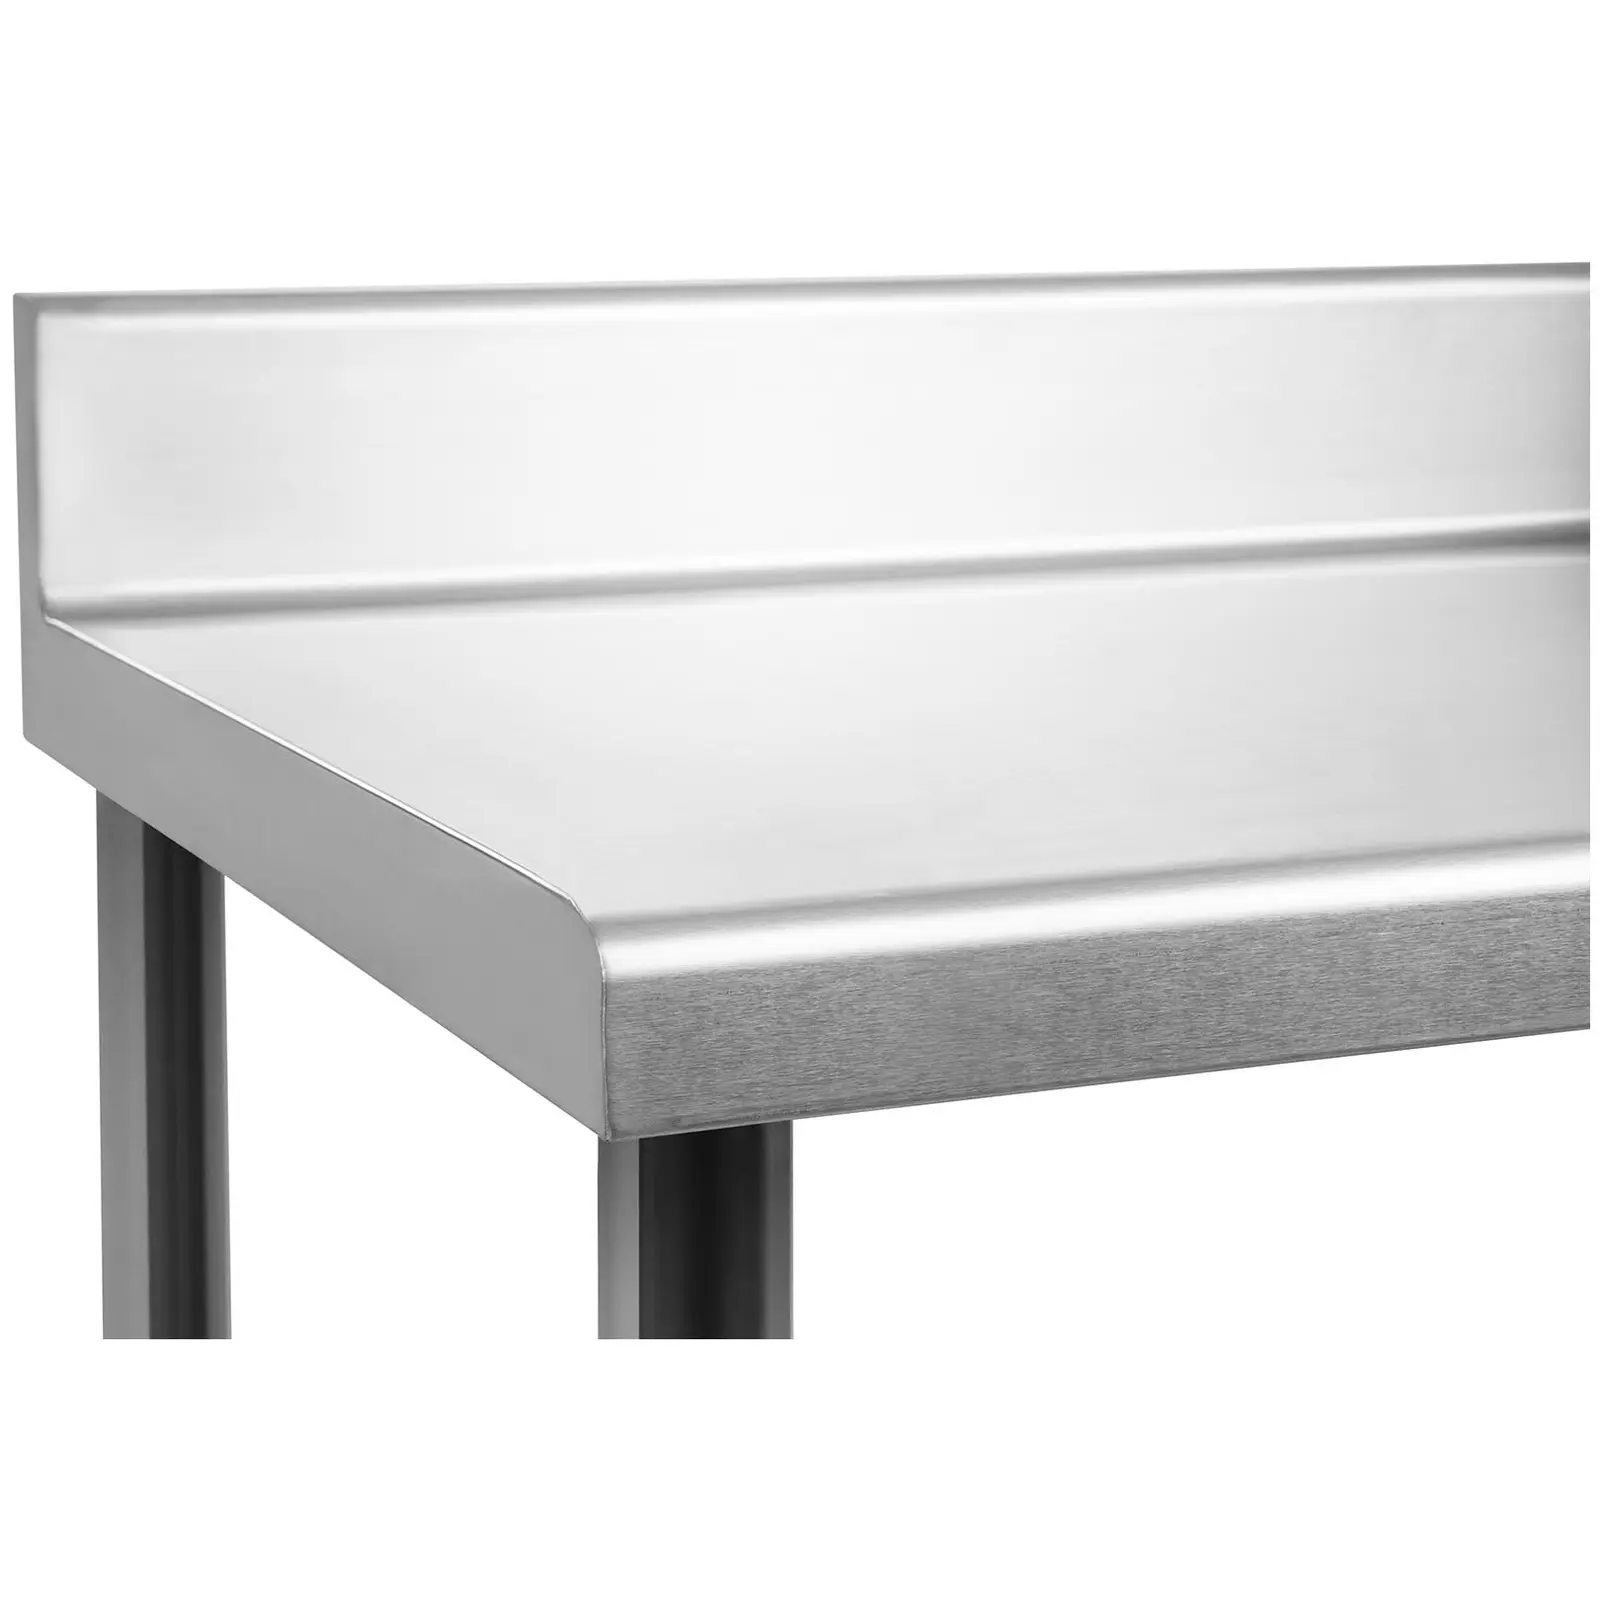 Tavolo inox con alzatina - 180 x 60 cm - Capacità di carico di 182 kg